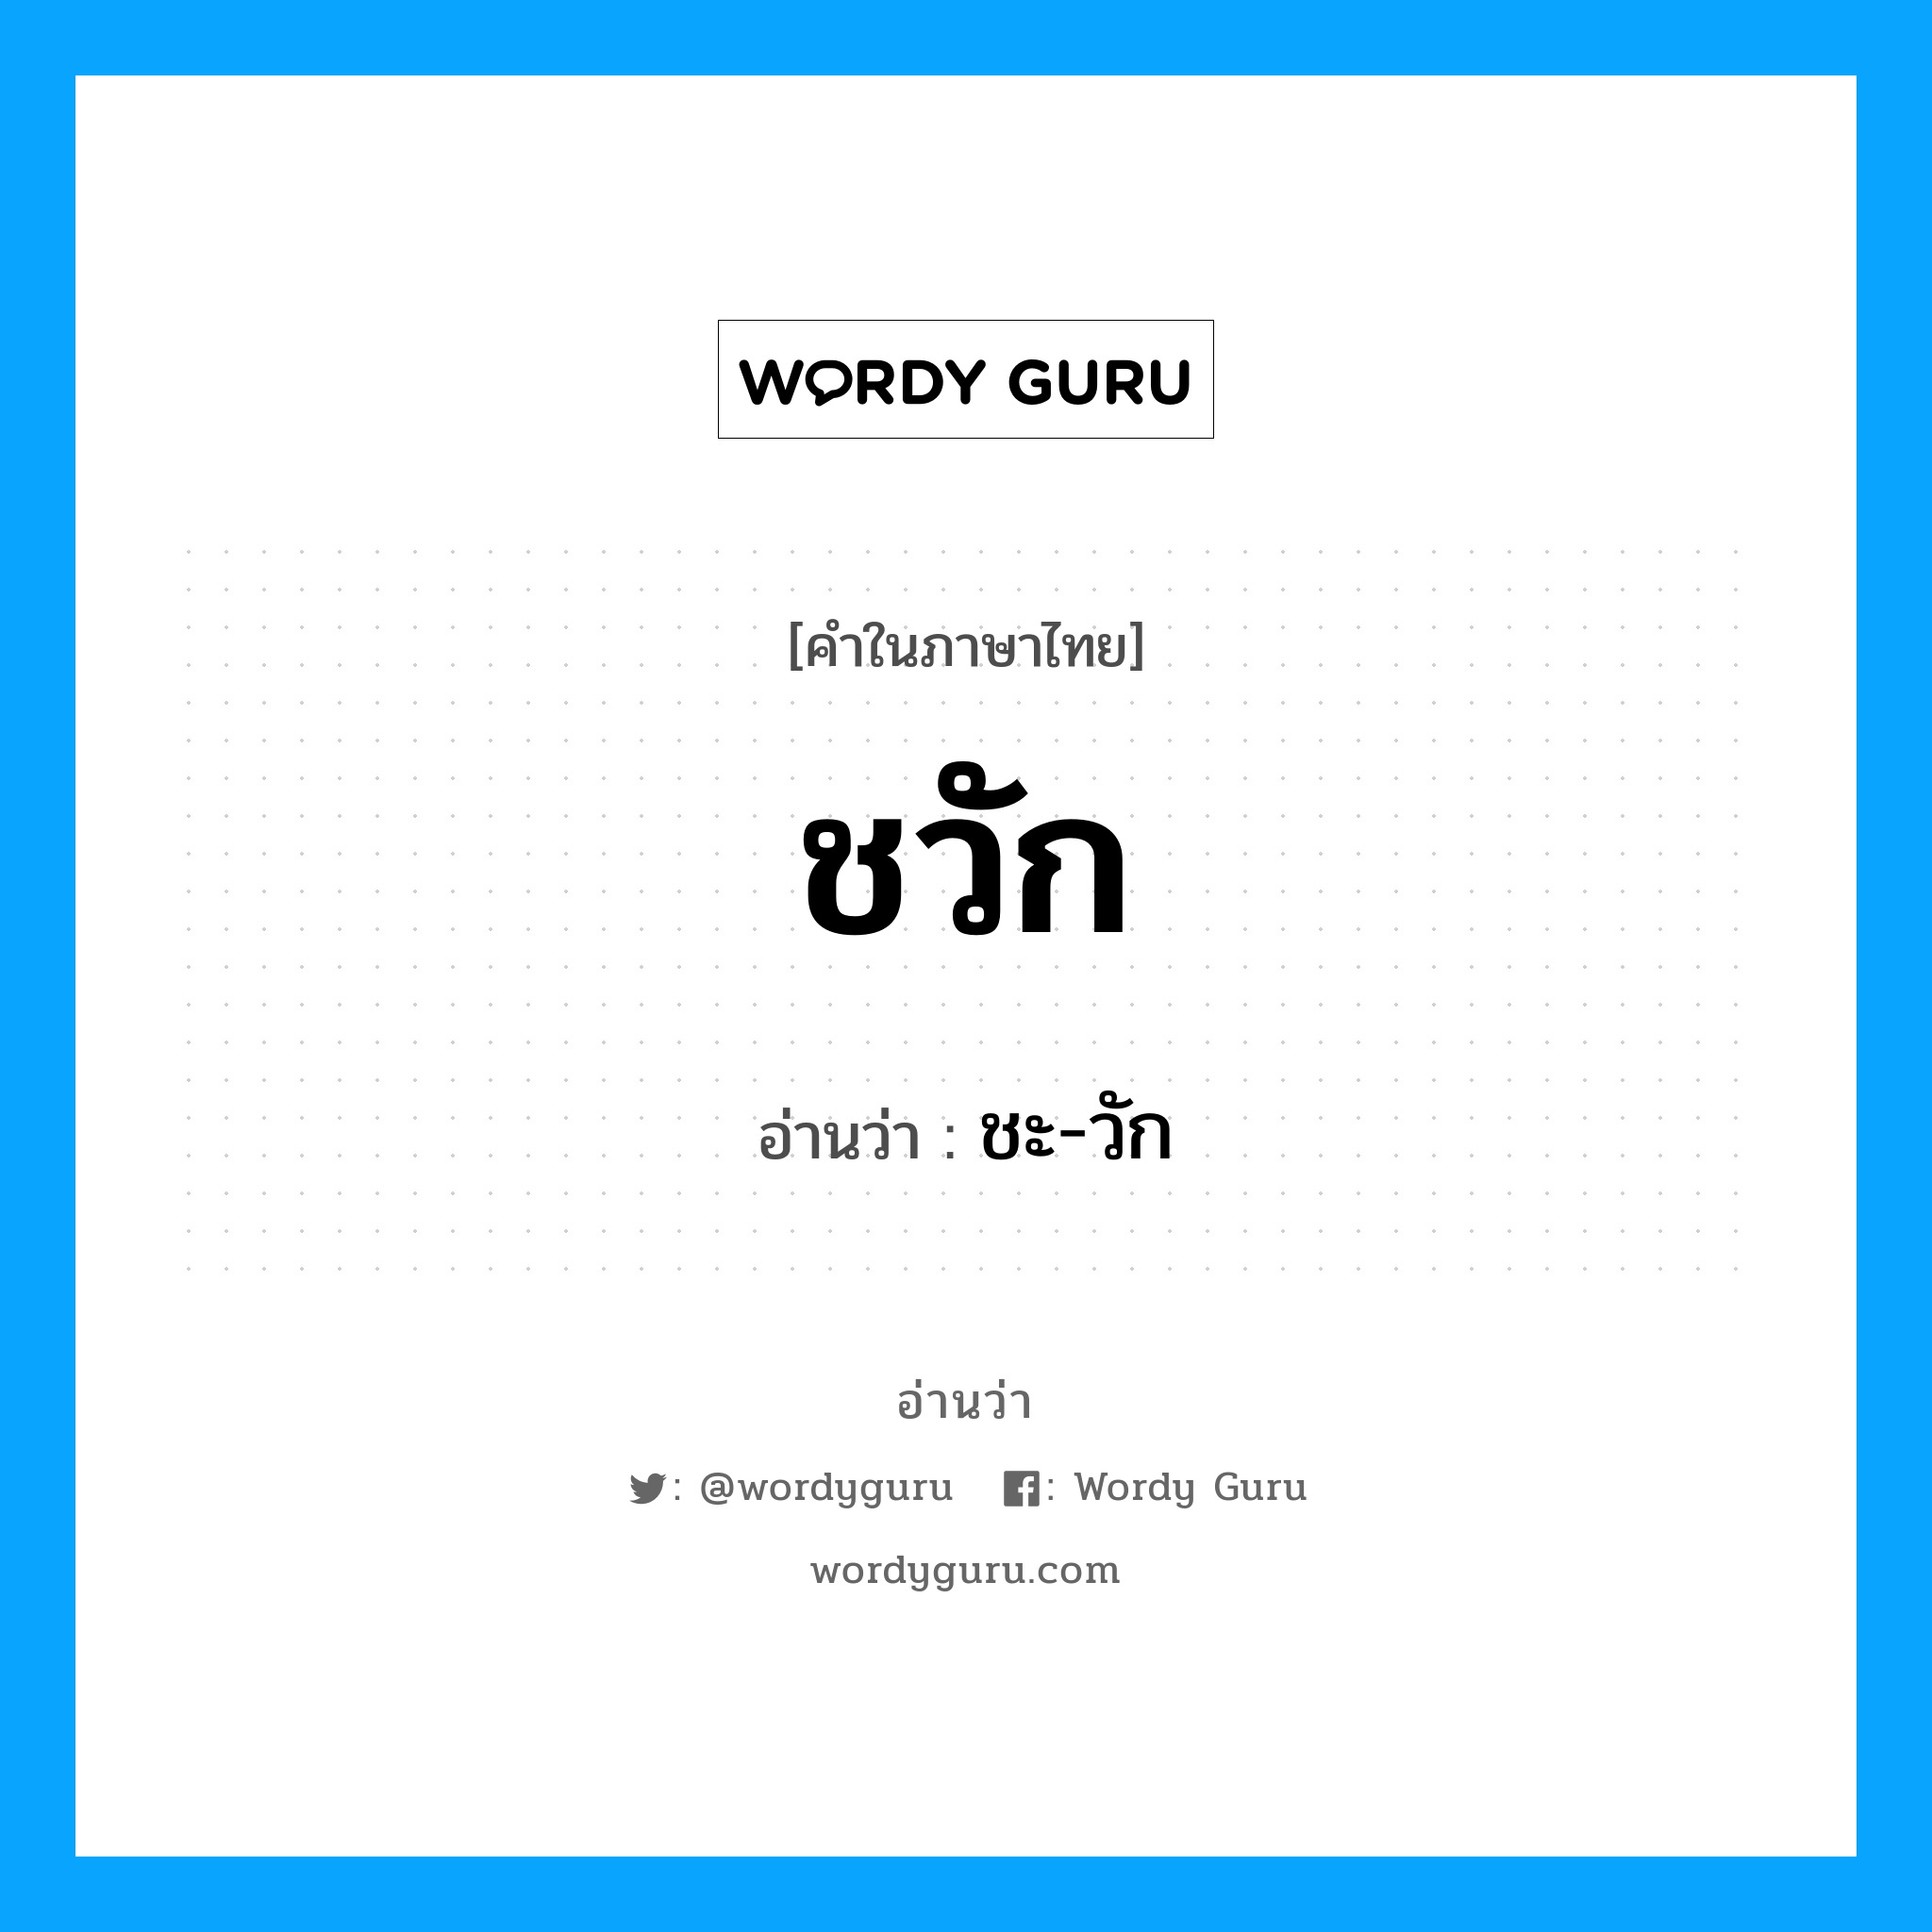 ชะ-วัก เป็นคำอ่านของคำไหน?, คำในภาษาไทย ชะ-วัก อ่านว่า ชวัก